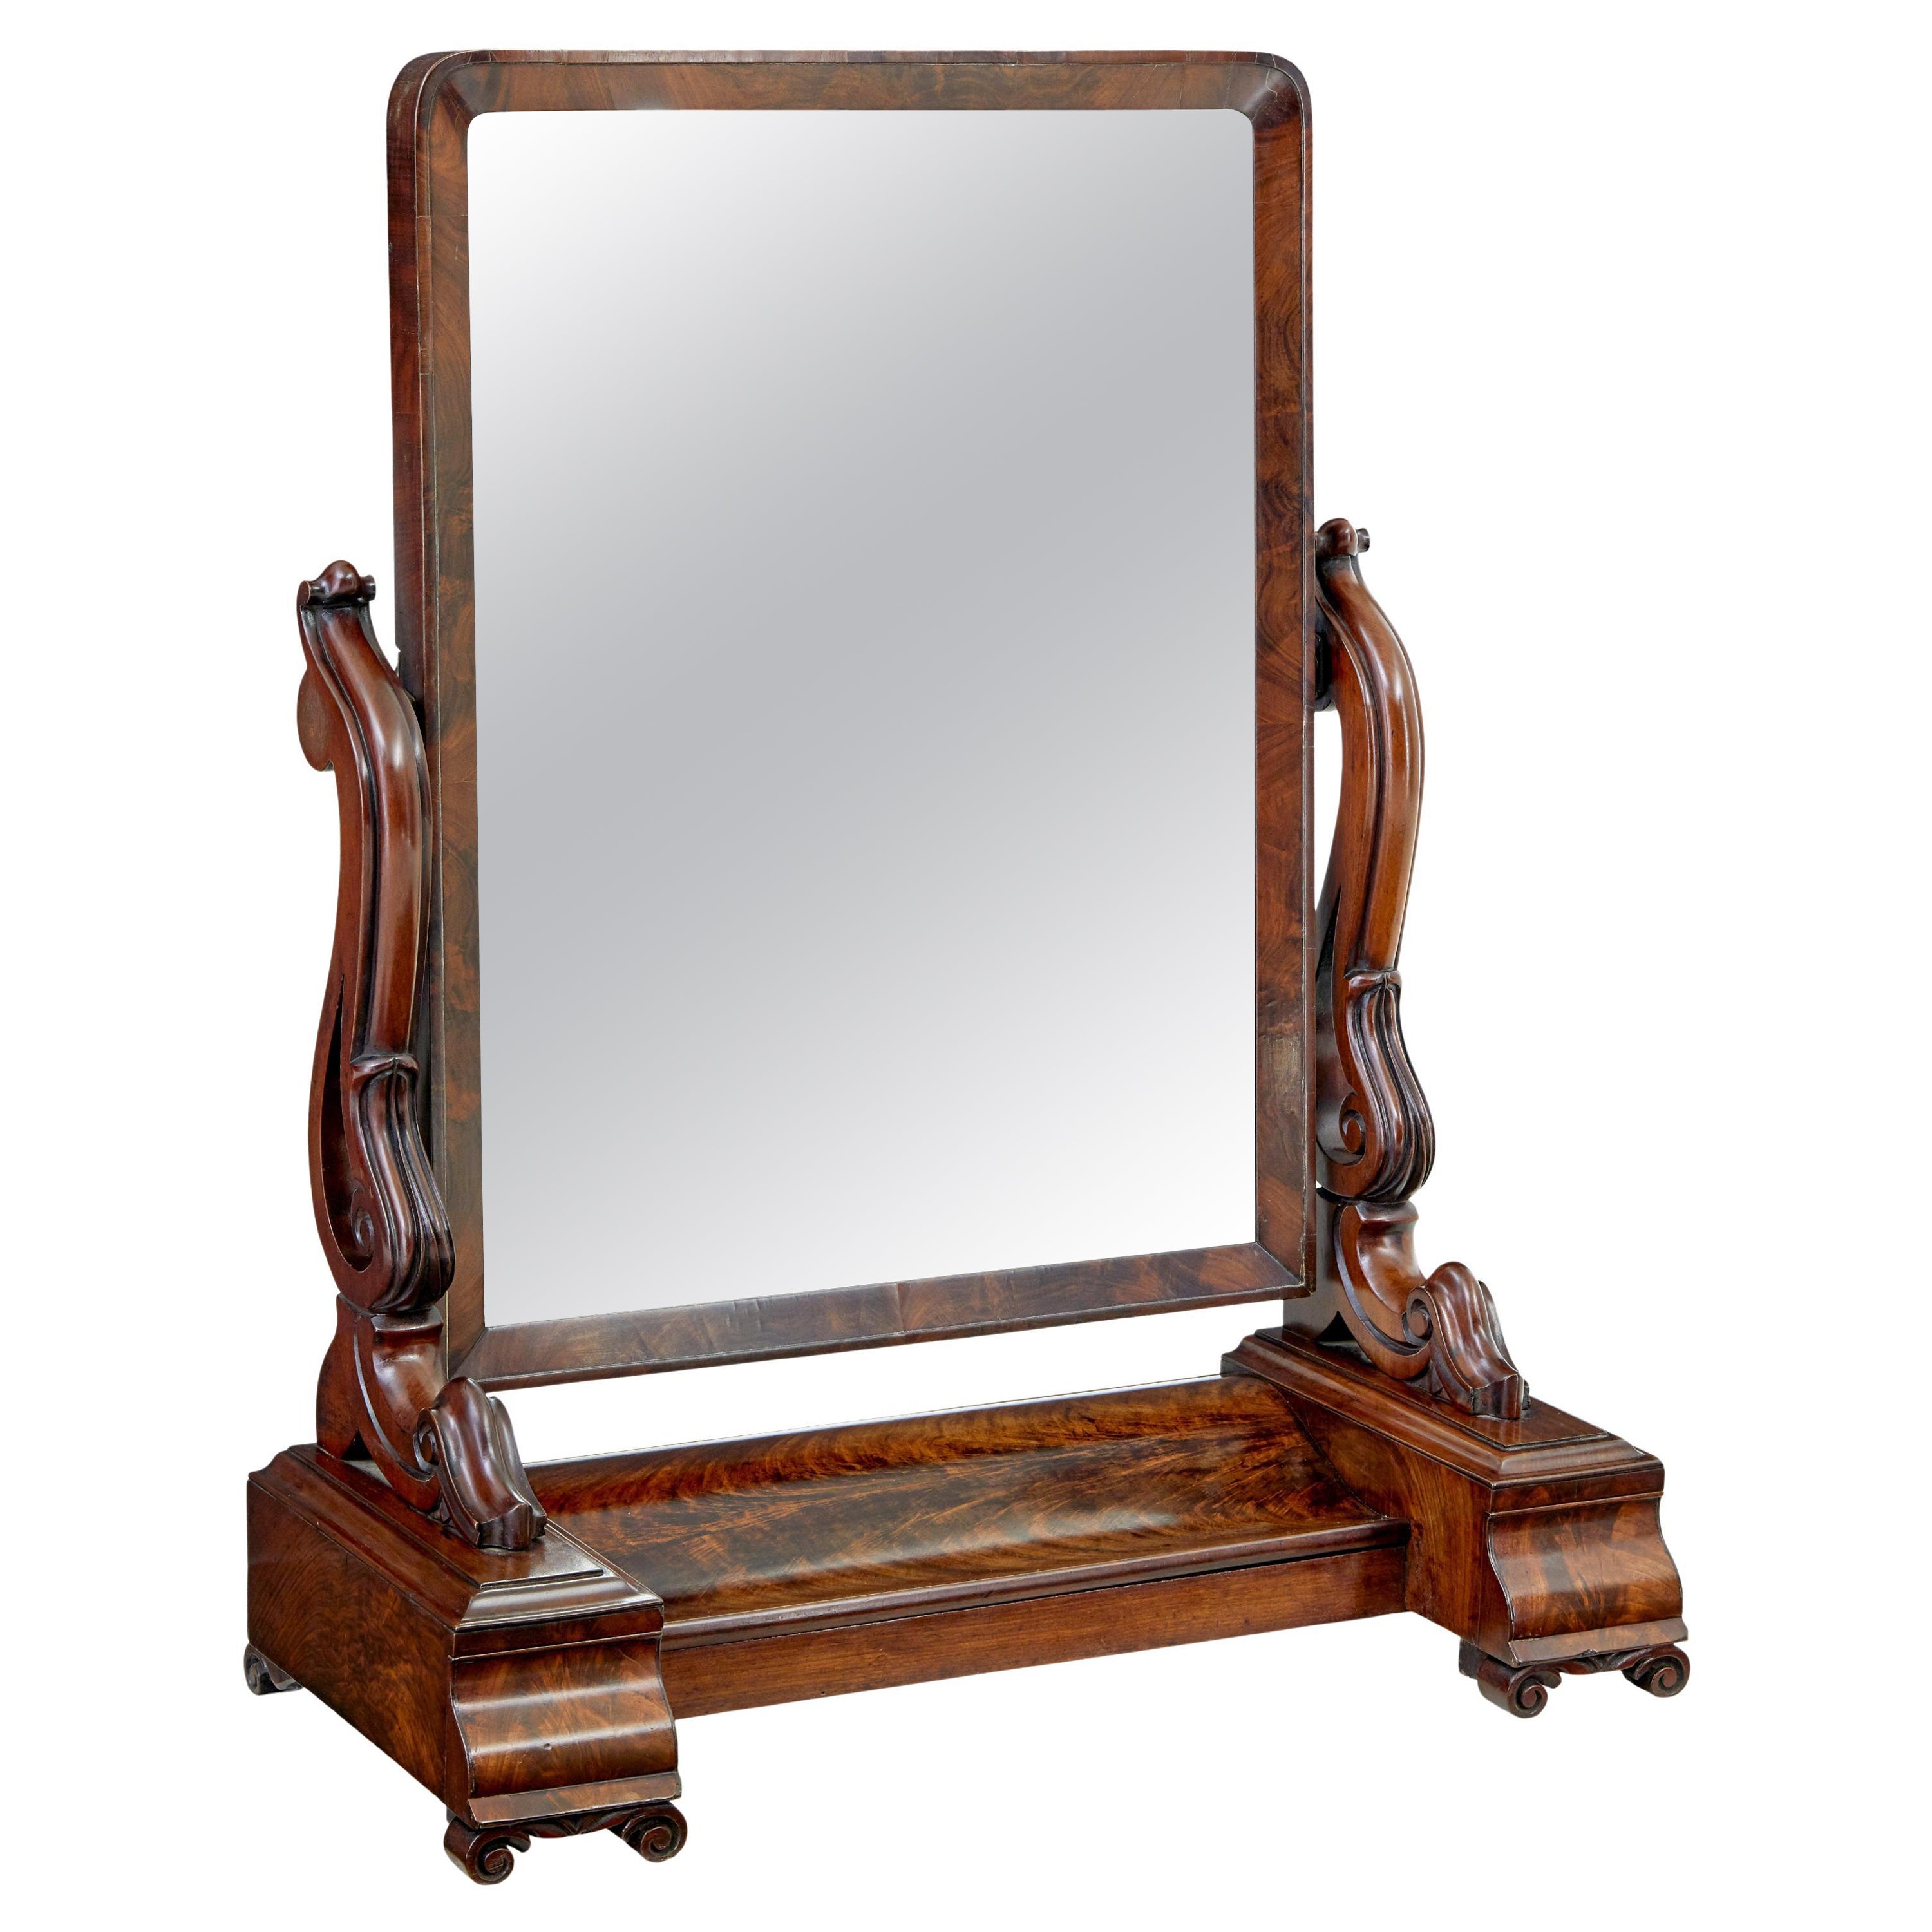 19th century early Victorian mahogany vanity mirror